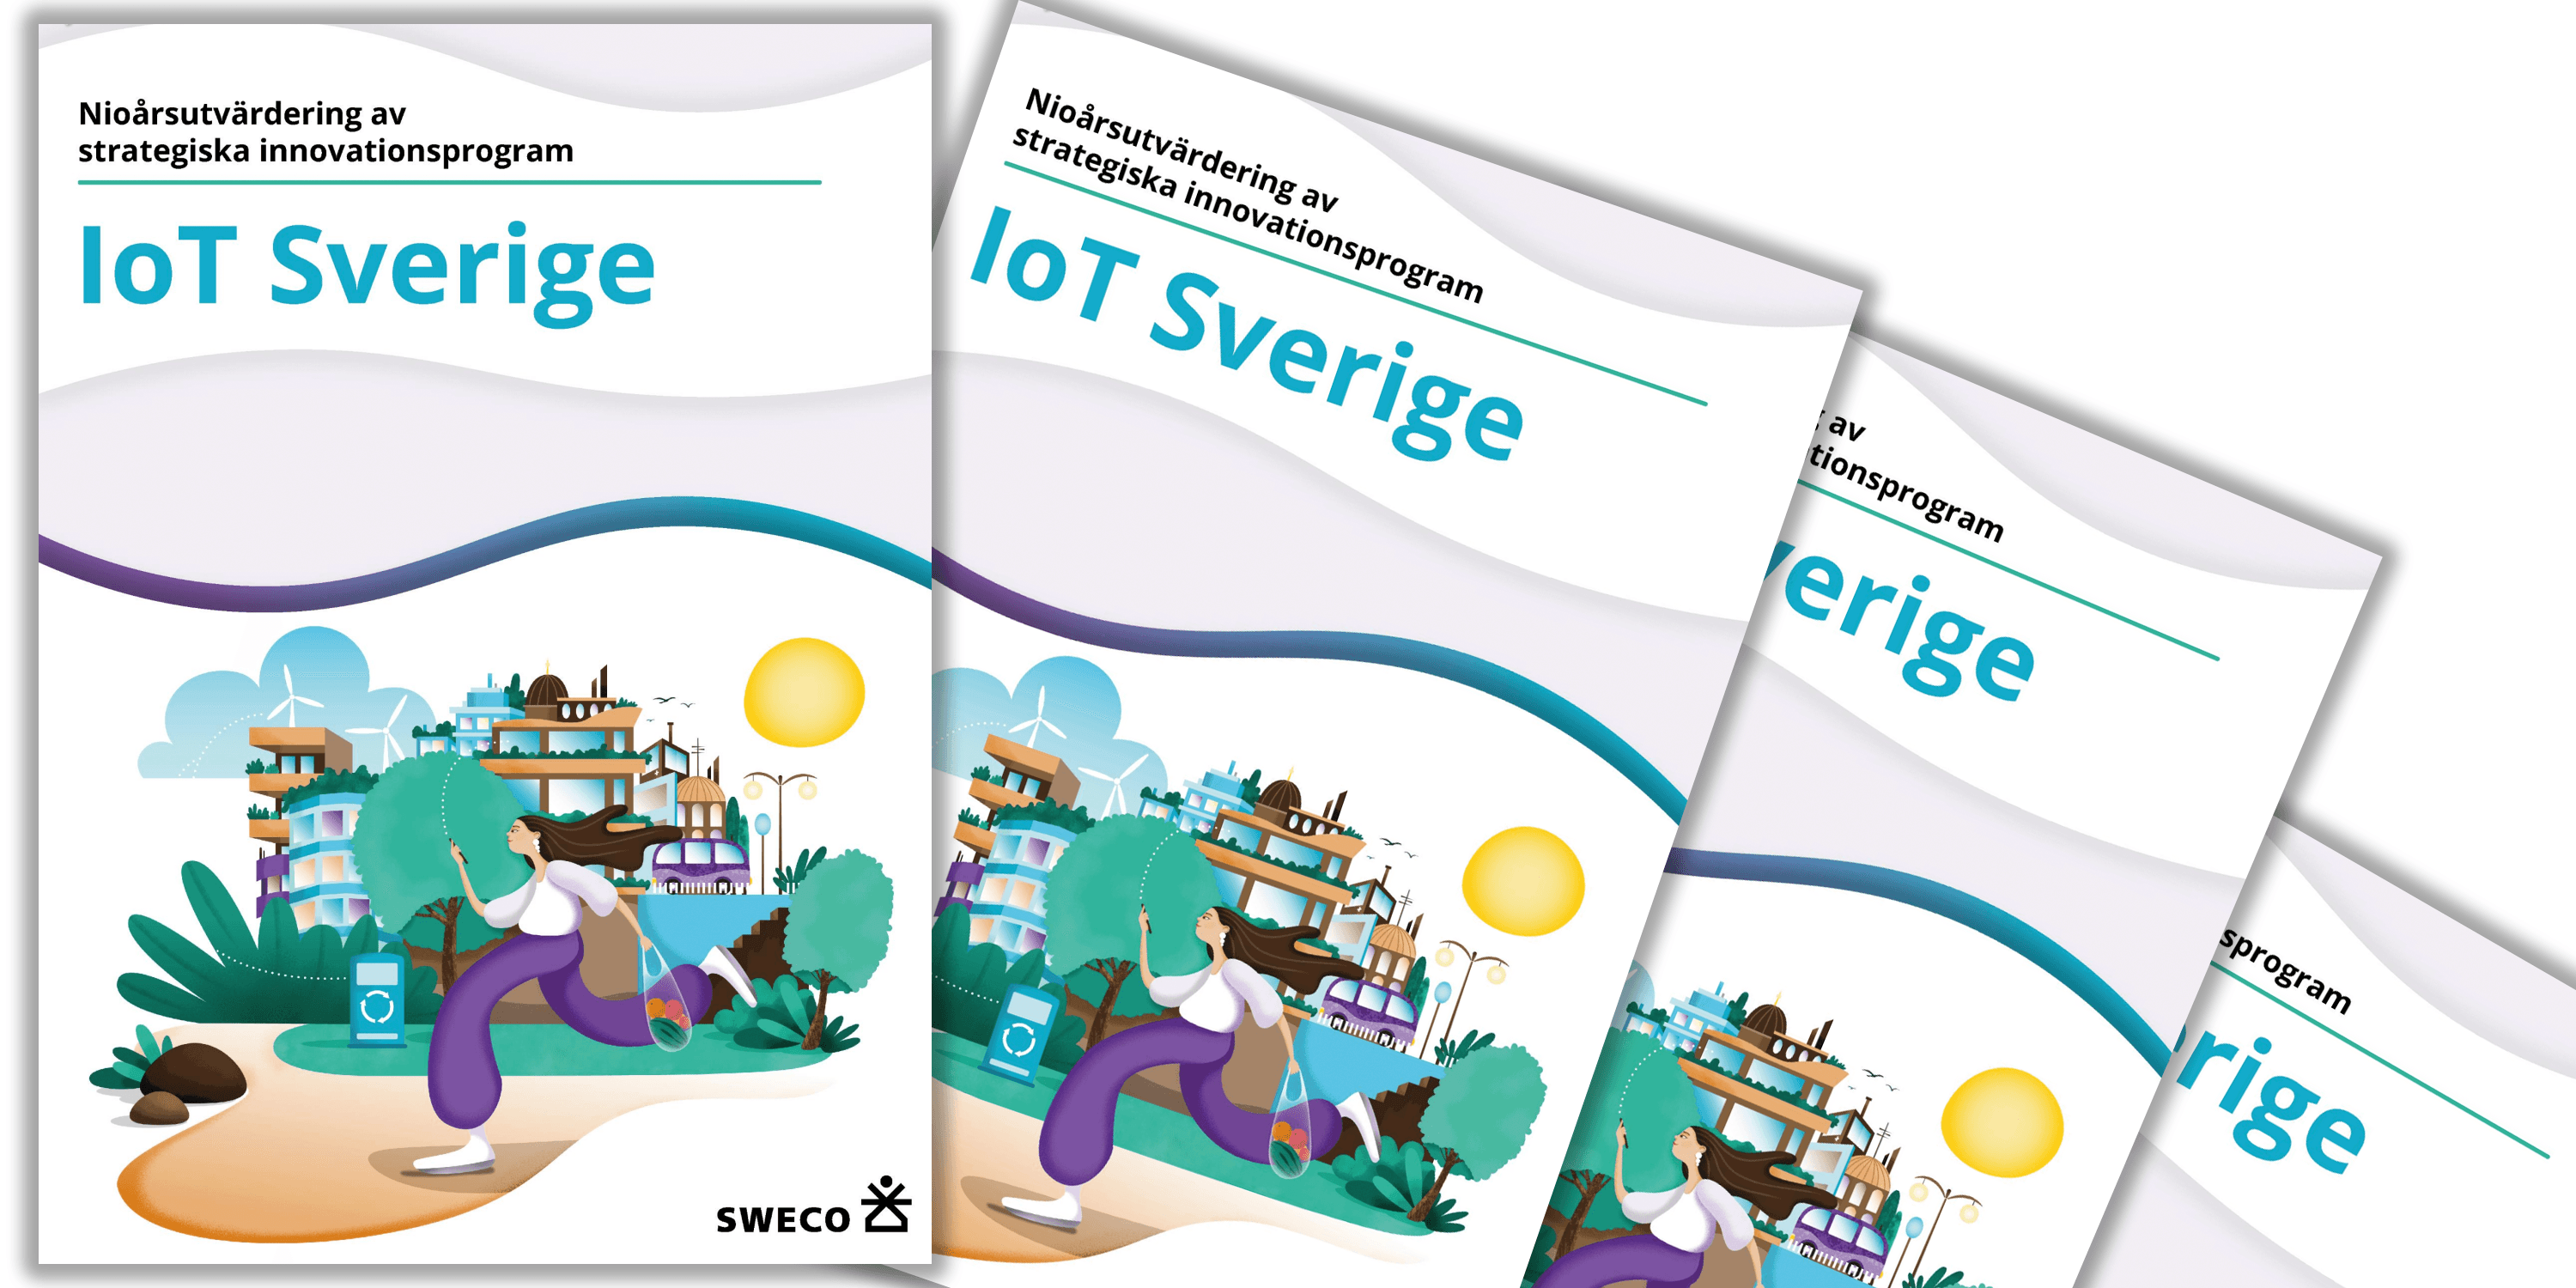 ”IoT Sverige är ett välfungerande program”